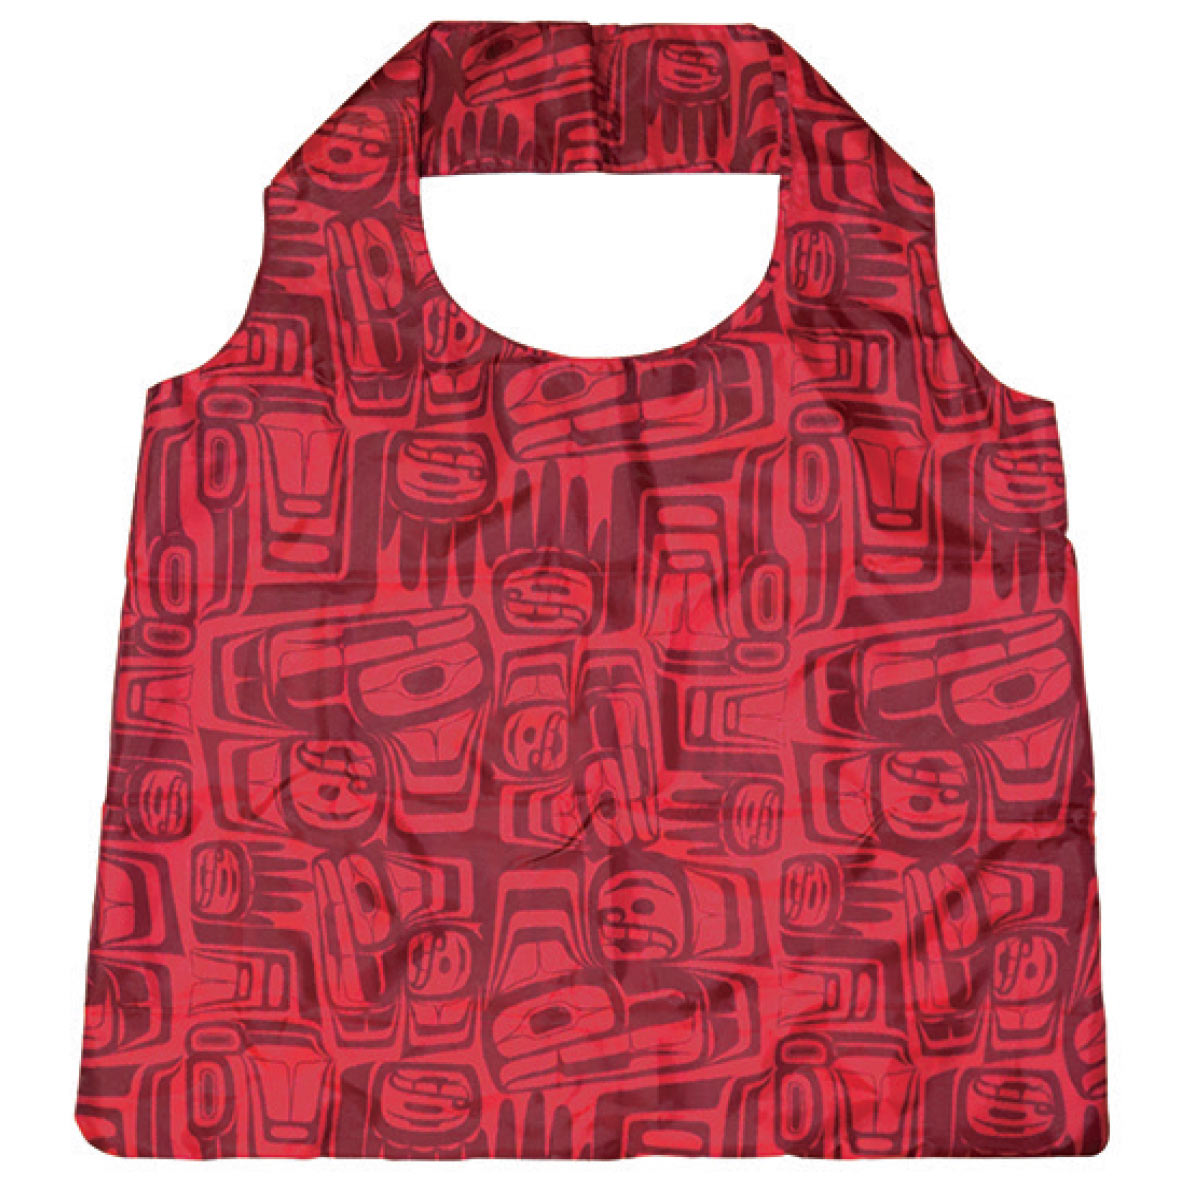 Foldable Shopping Bag Ben Houstie Eagle Crest